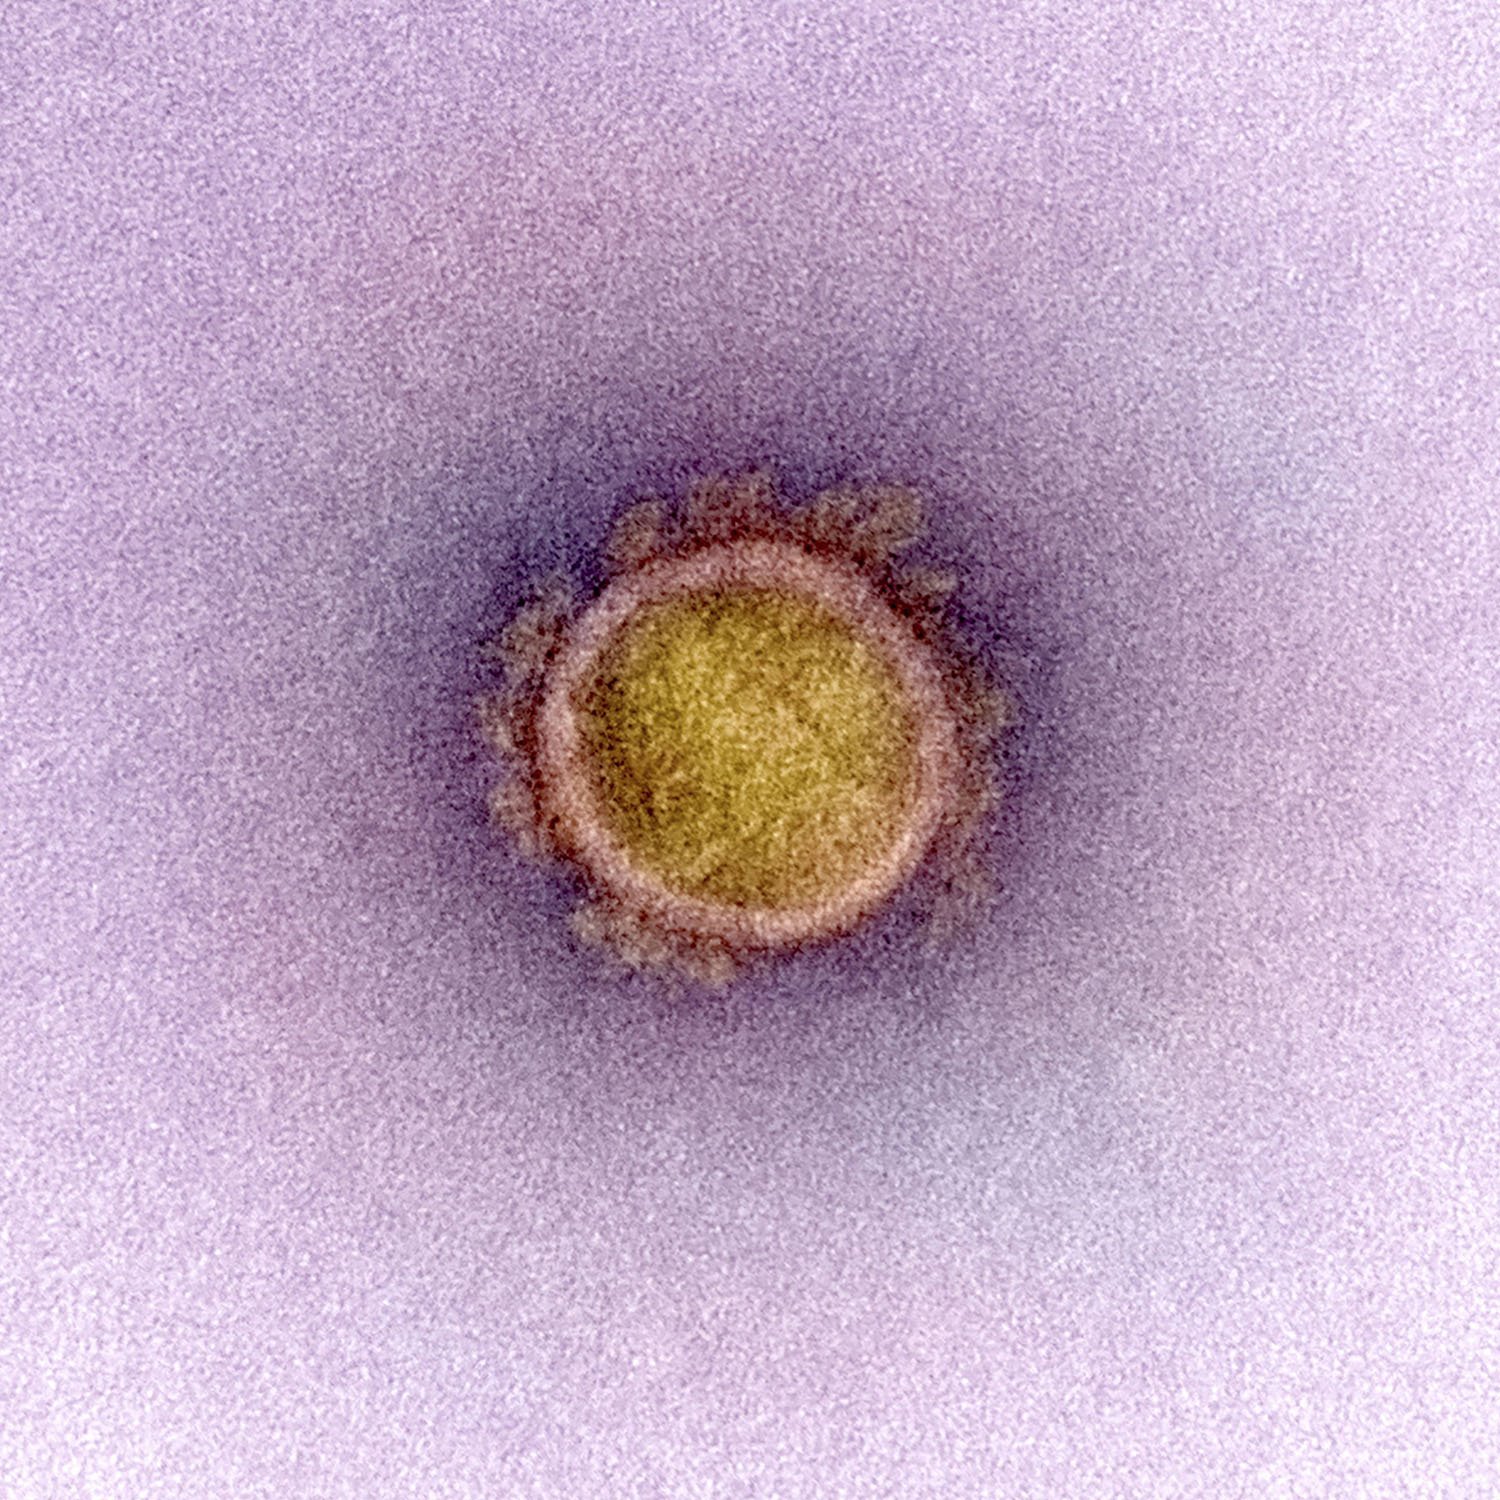 Coronavirus SARS-CoV-2 causante del Covid-19